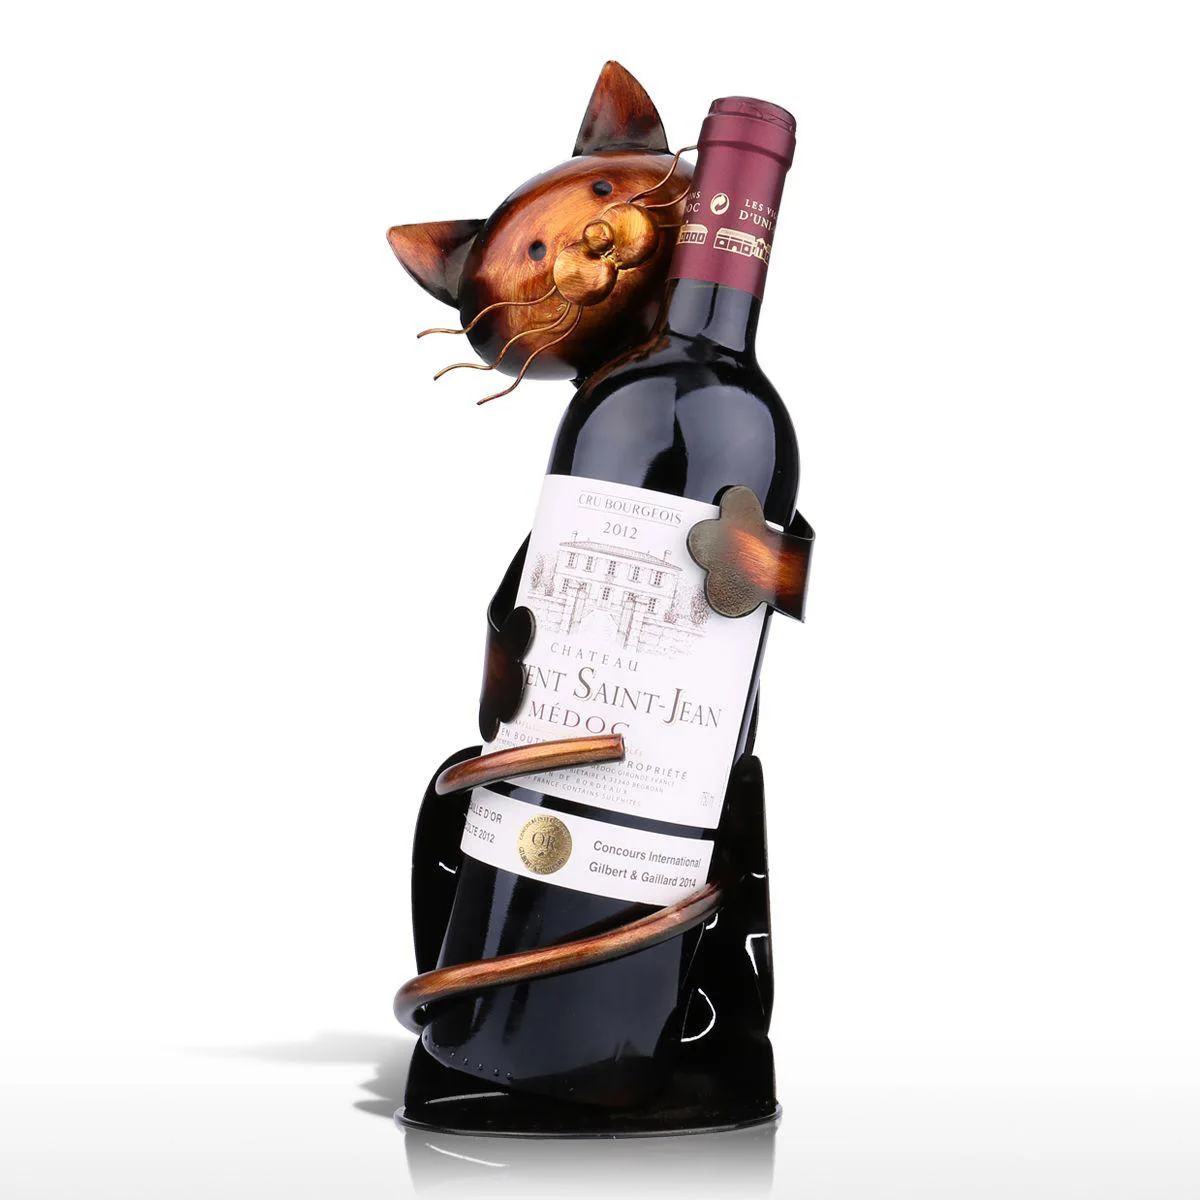 Образный держатель для бутылки вина полка фигурка практичный держатель в виде статуэтки для винной бутылки офисный Декор винный стеллаж